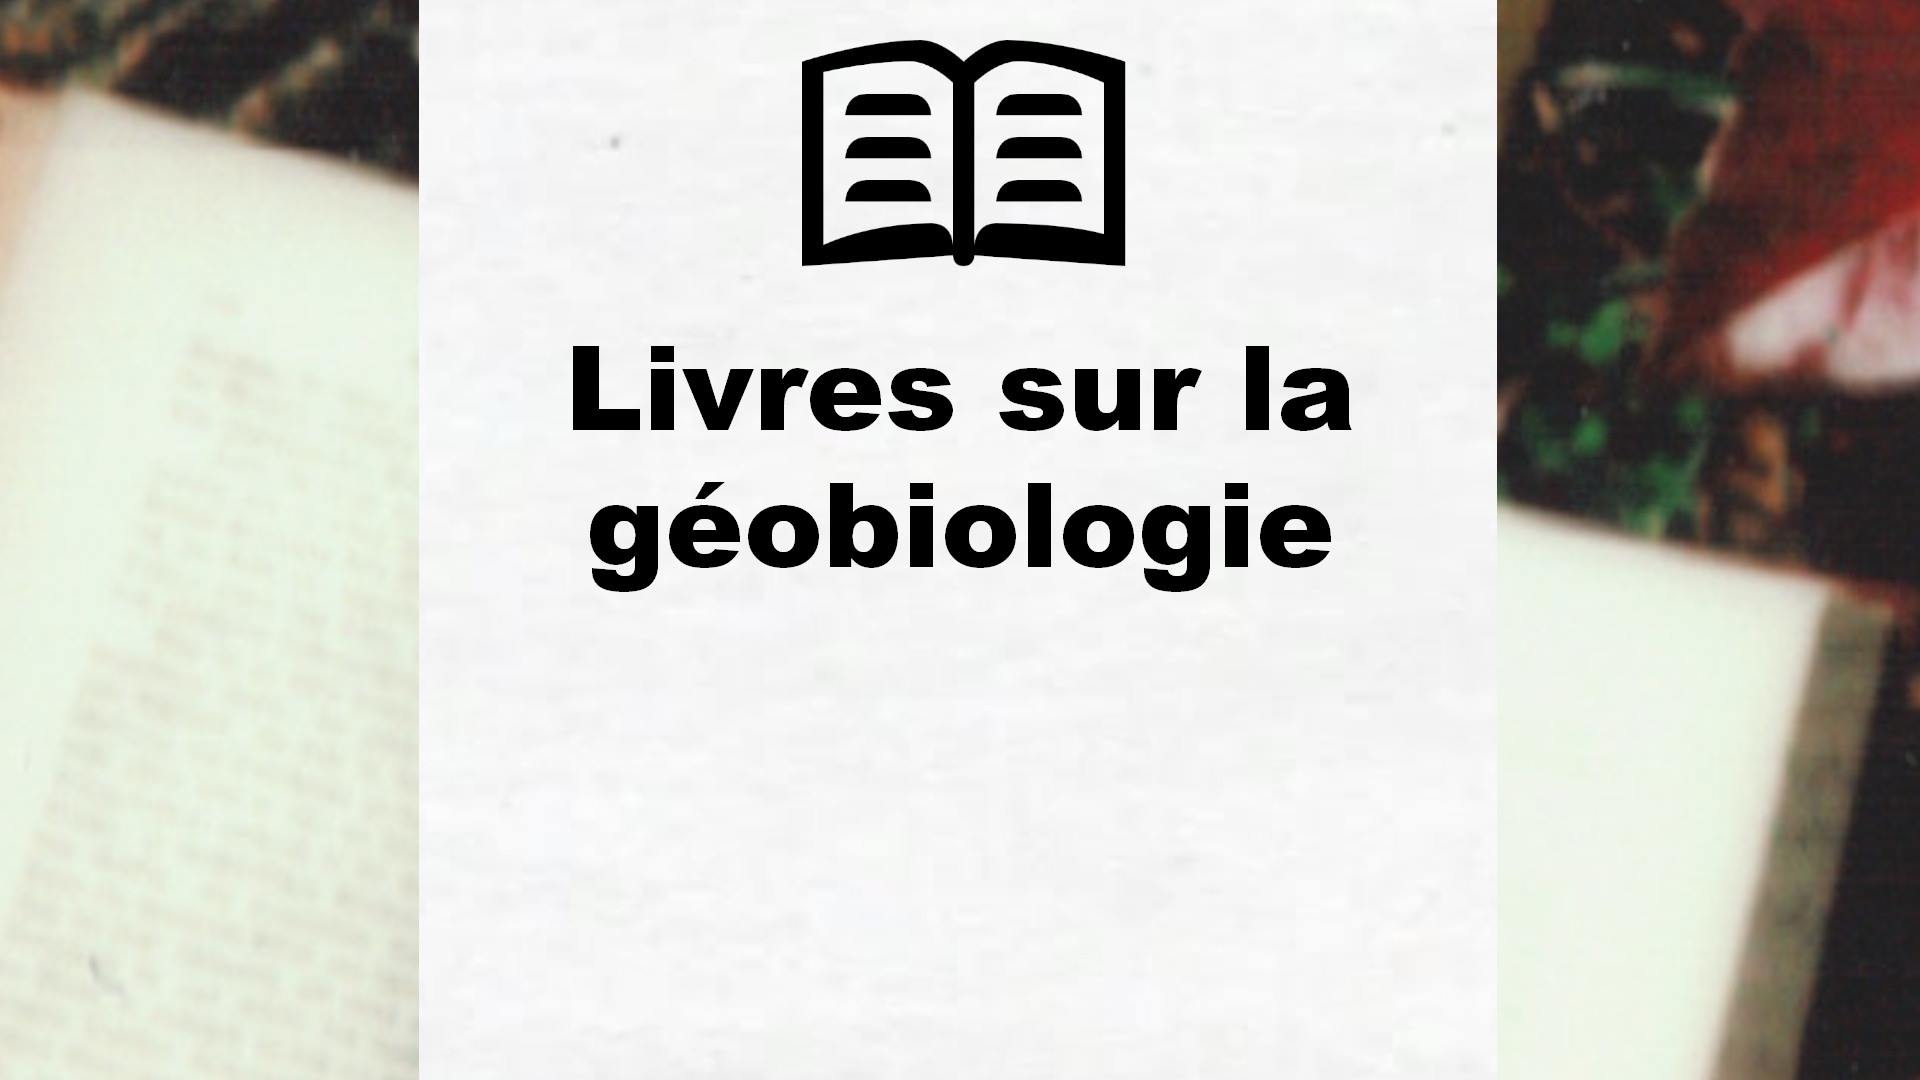 Livres sur la géobiologie